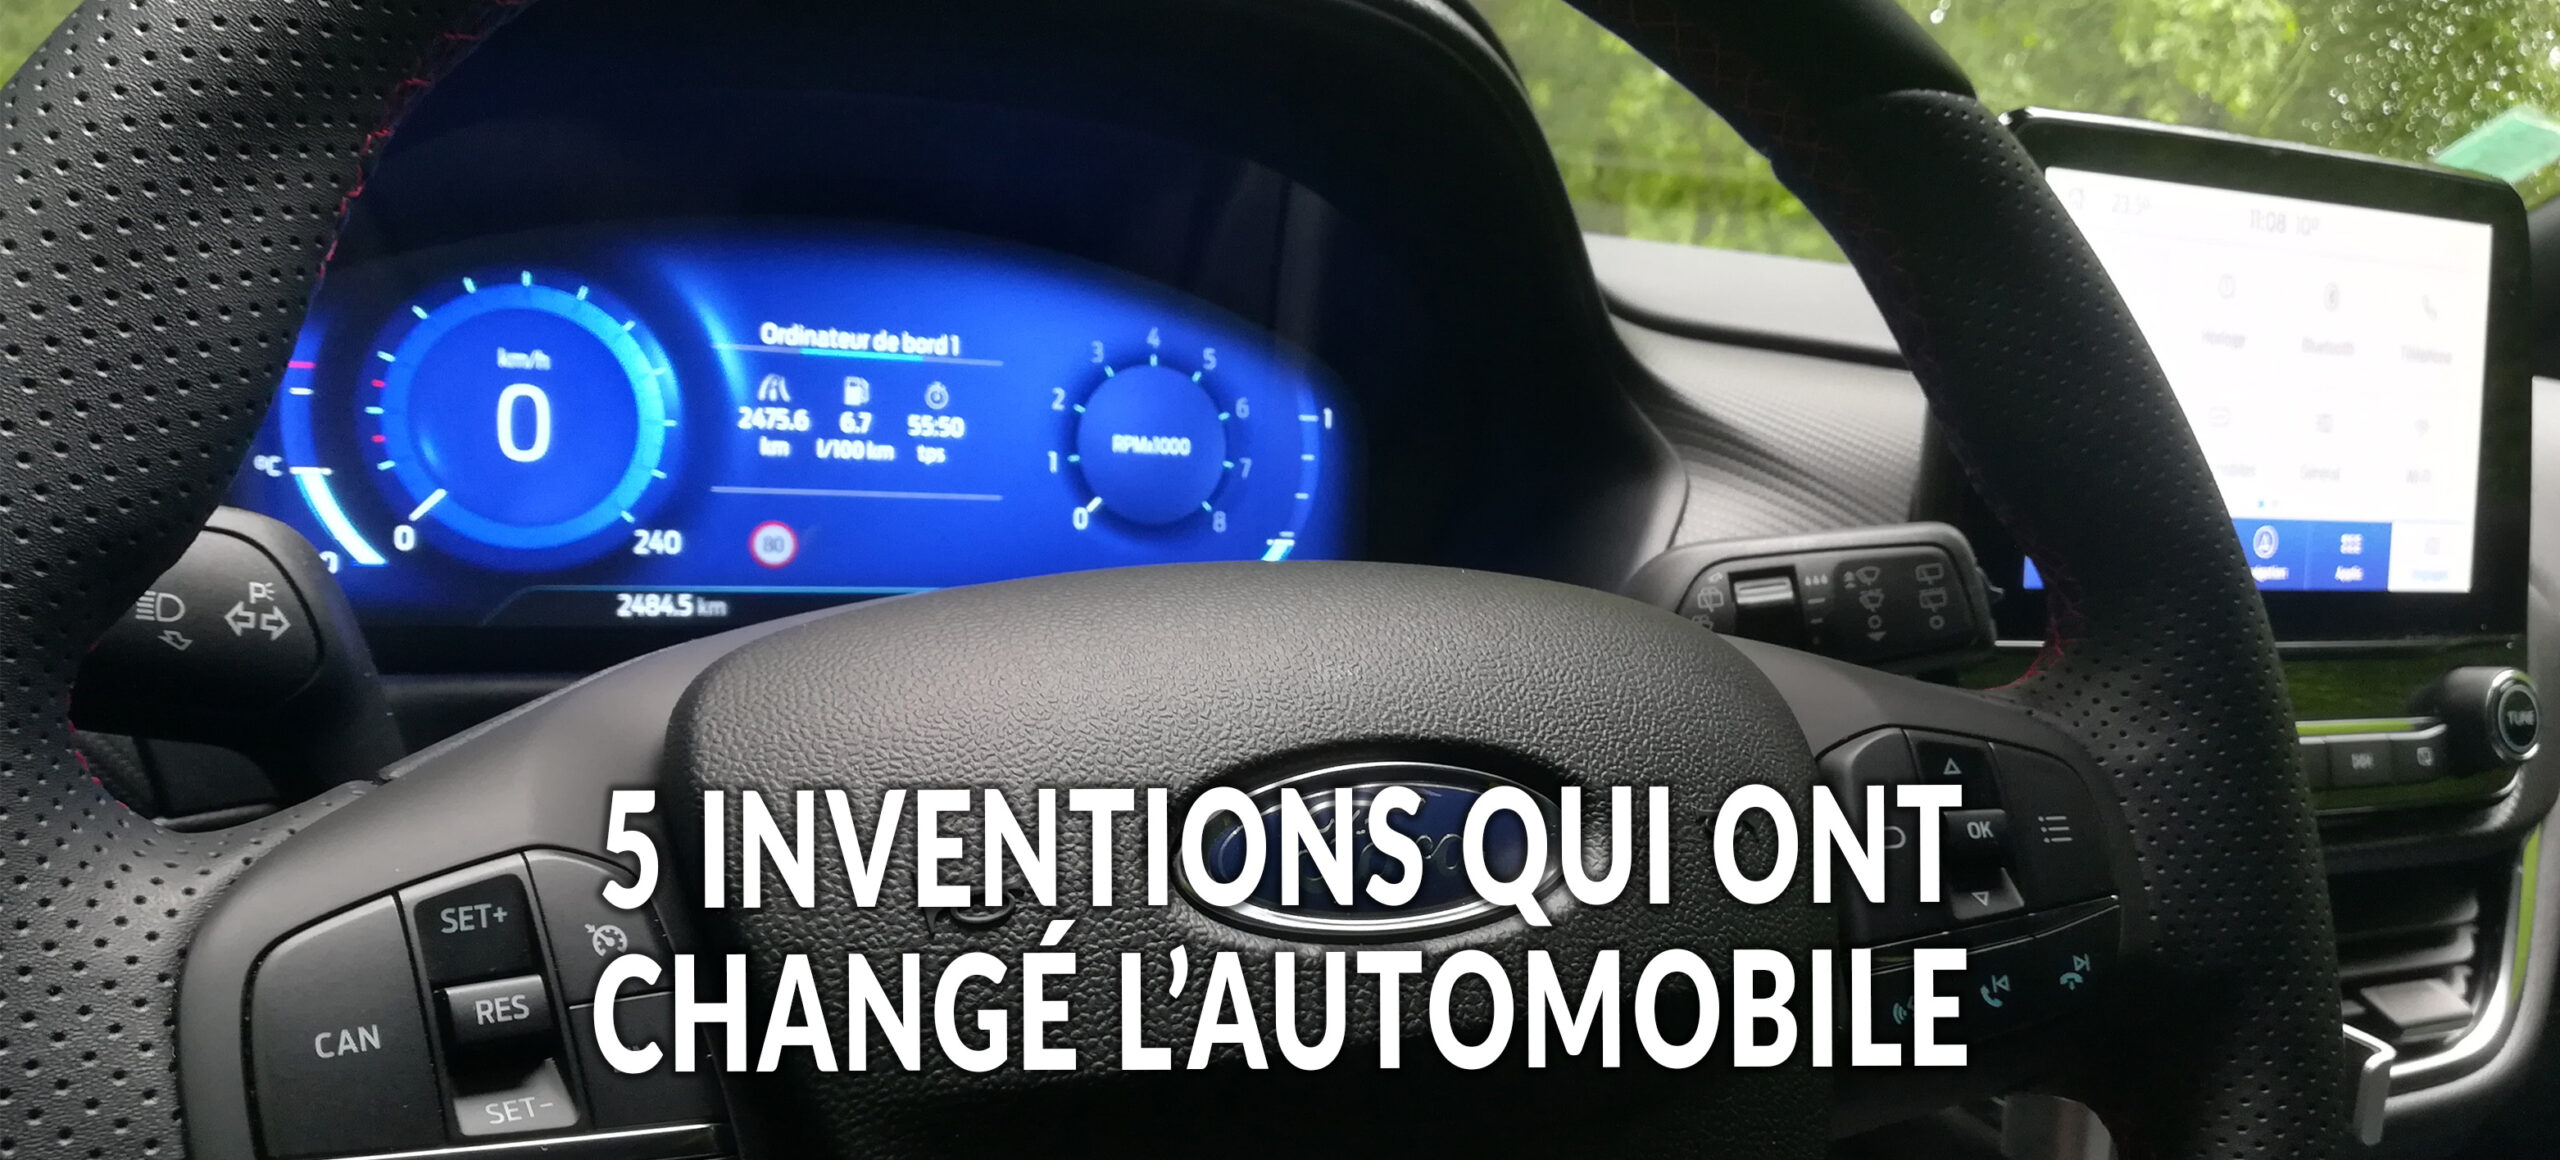 5 inventions qui ont changé l’automobile